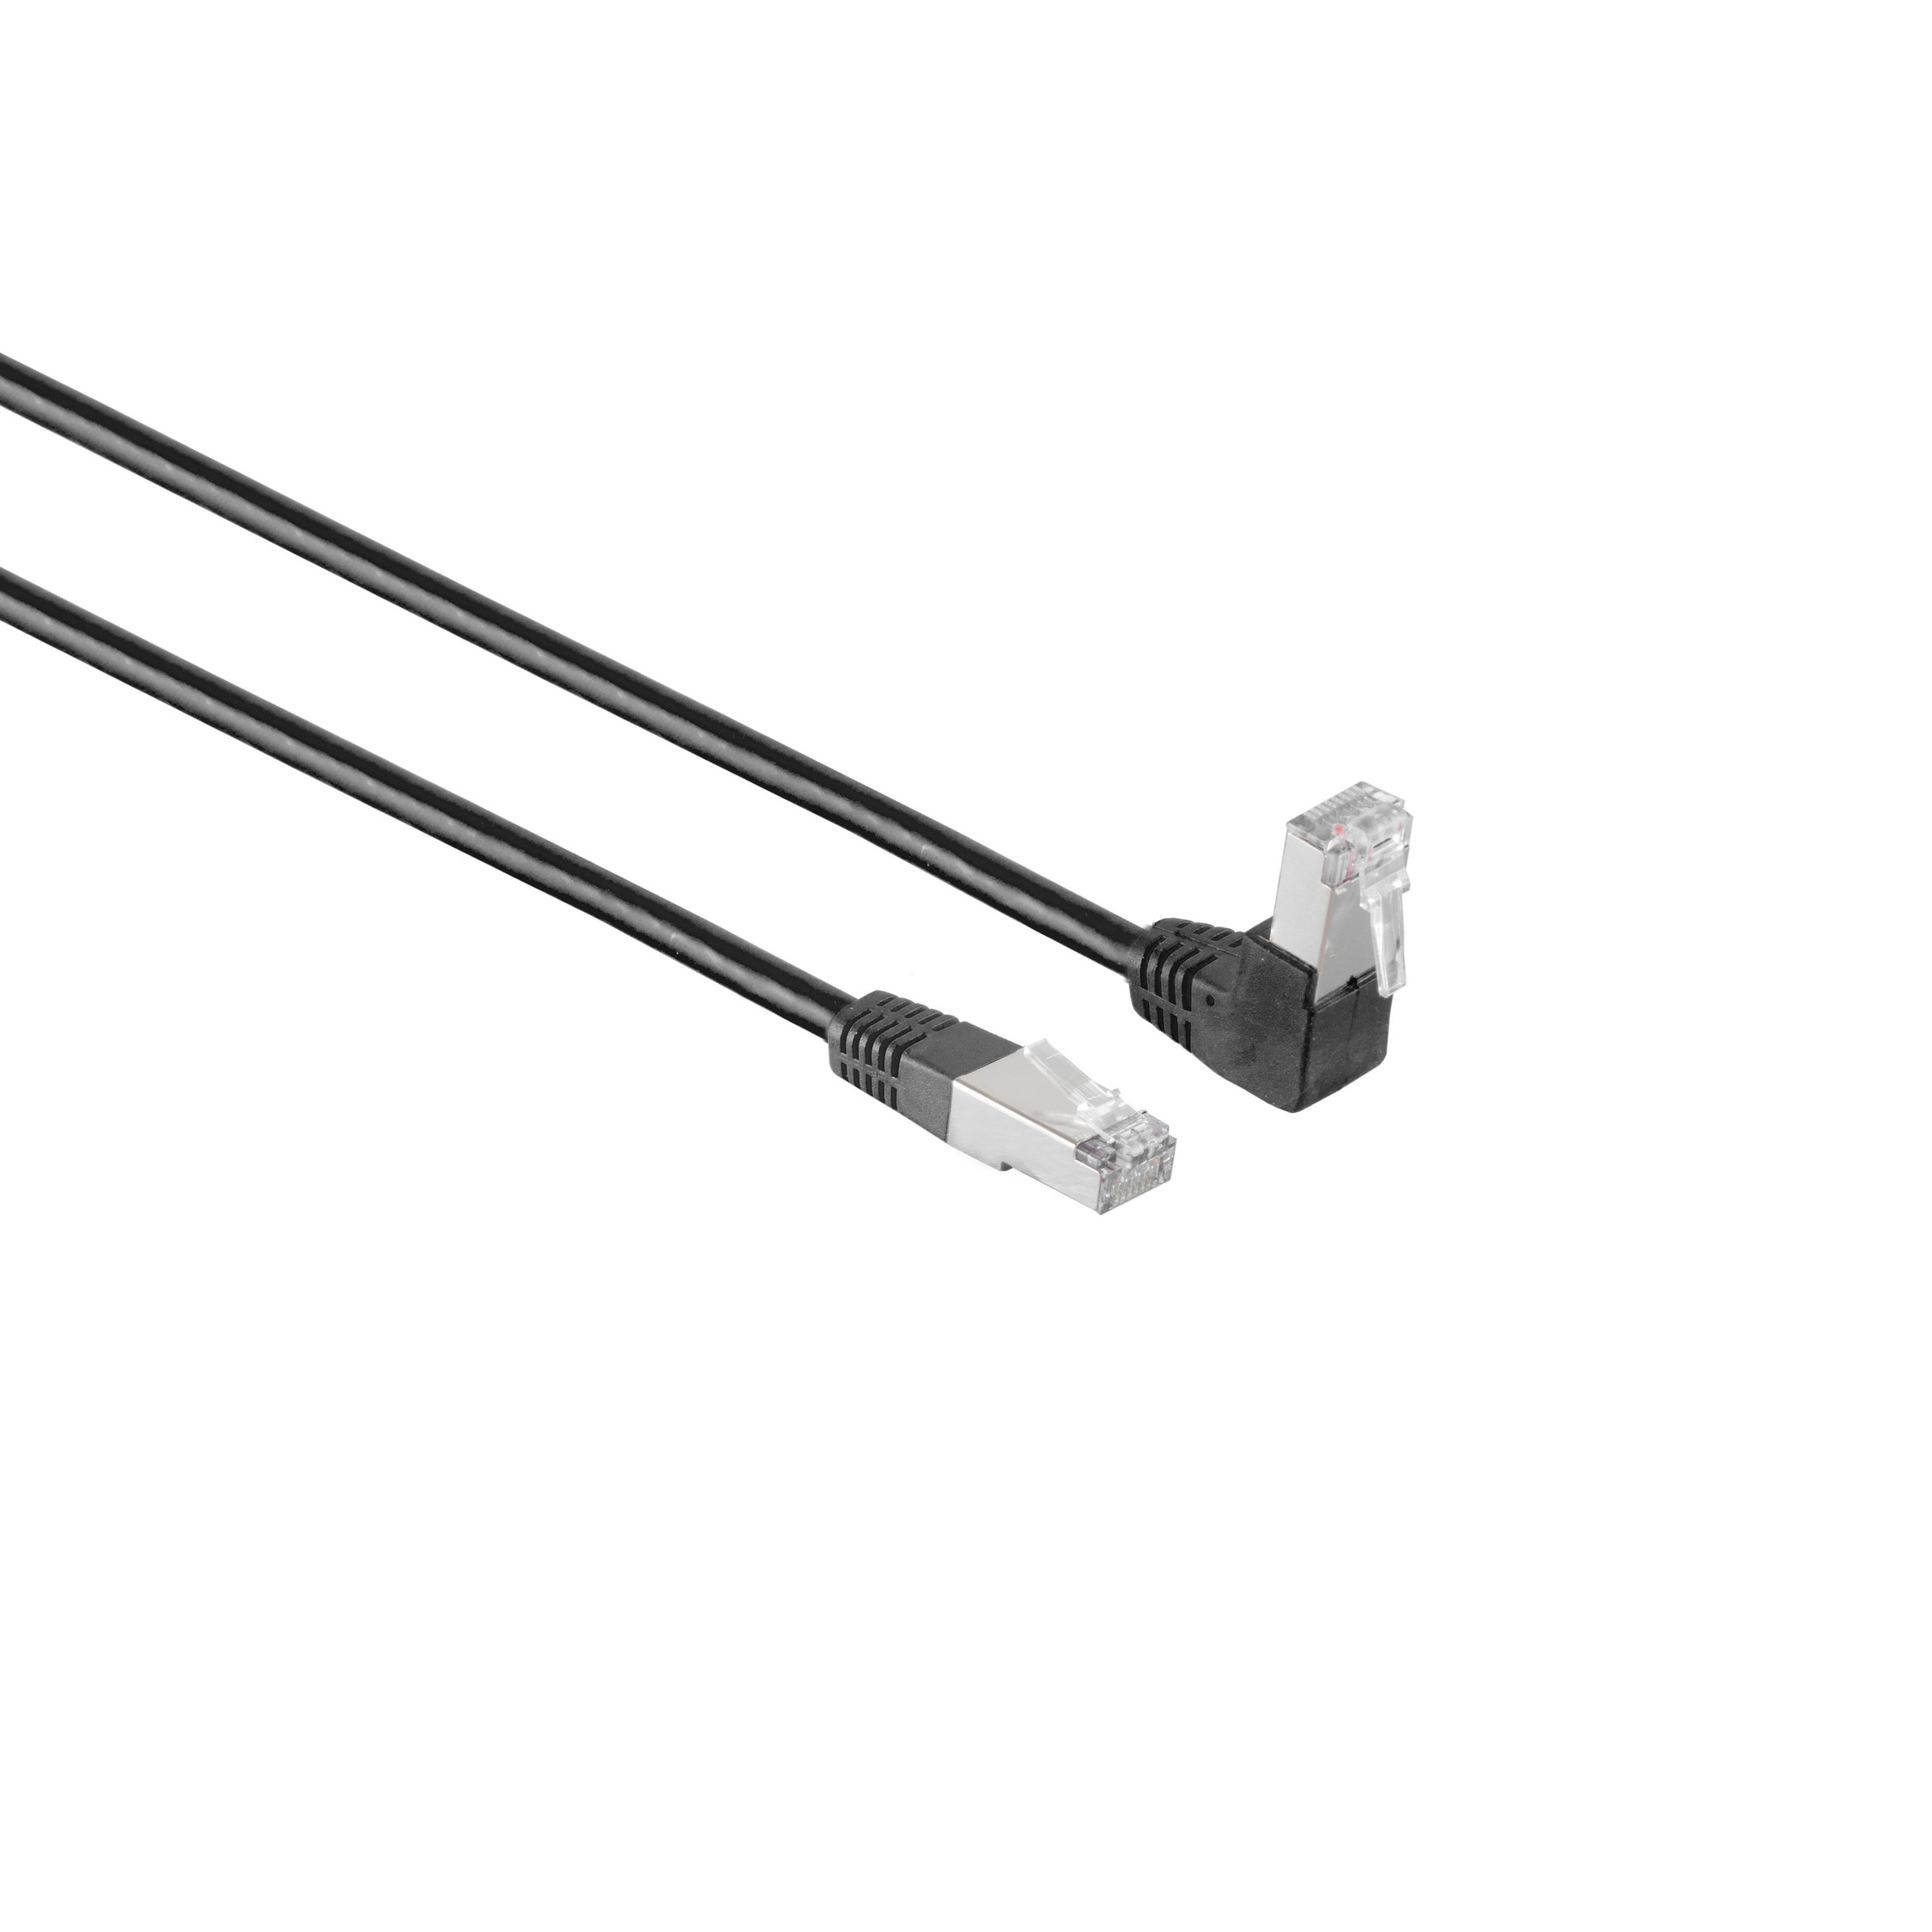 KABELBUDE Kabel cat 2m, 6 Winkel-gerade 2 Patchkabel S/FTP PIMF RJ45, schwarz m